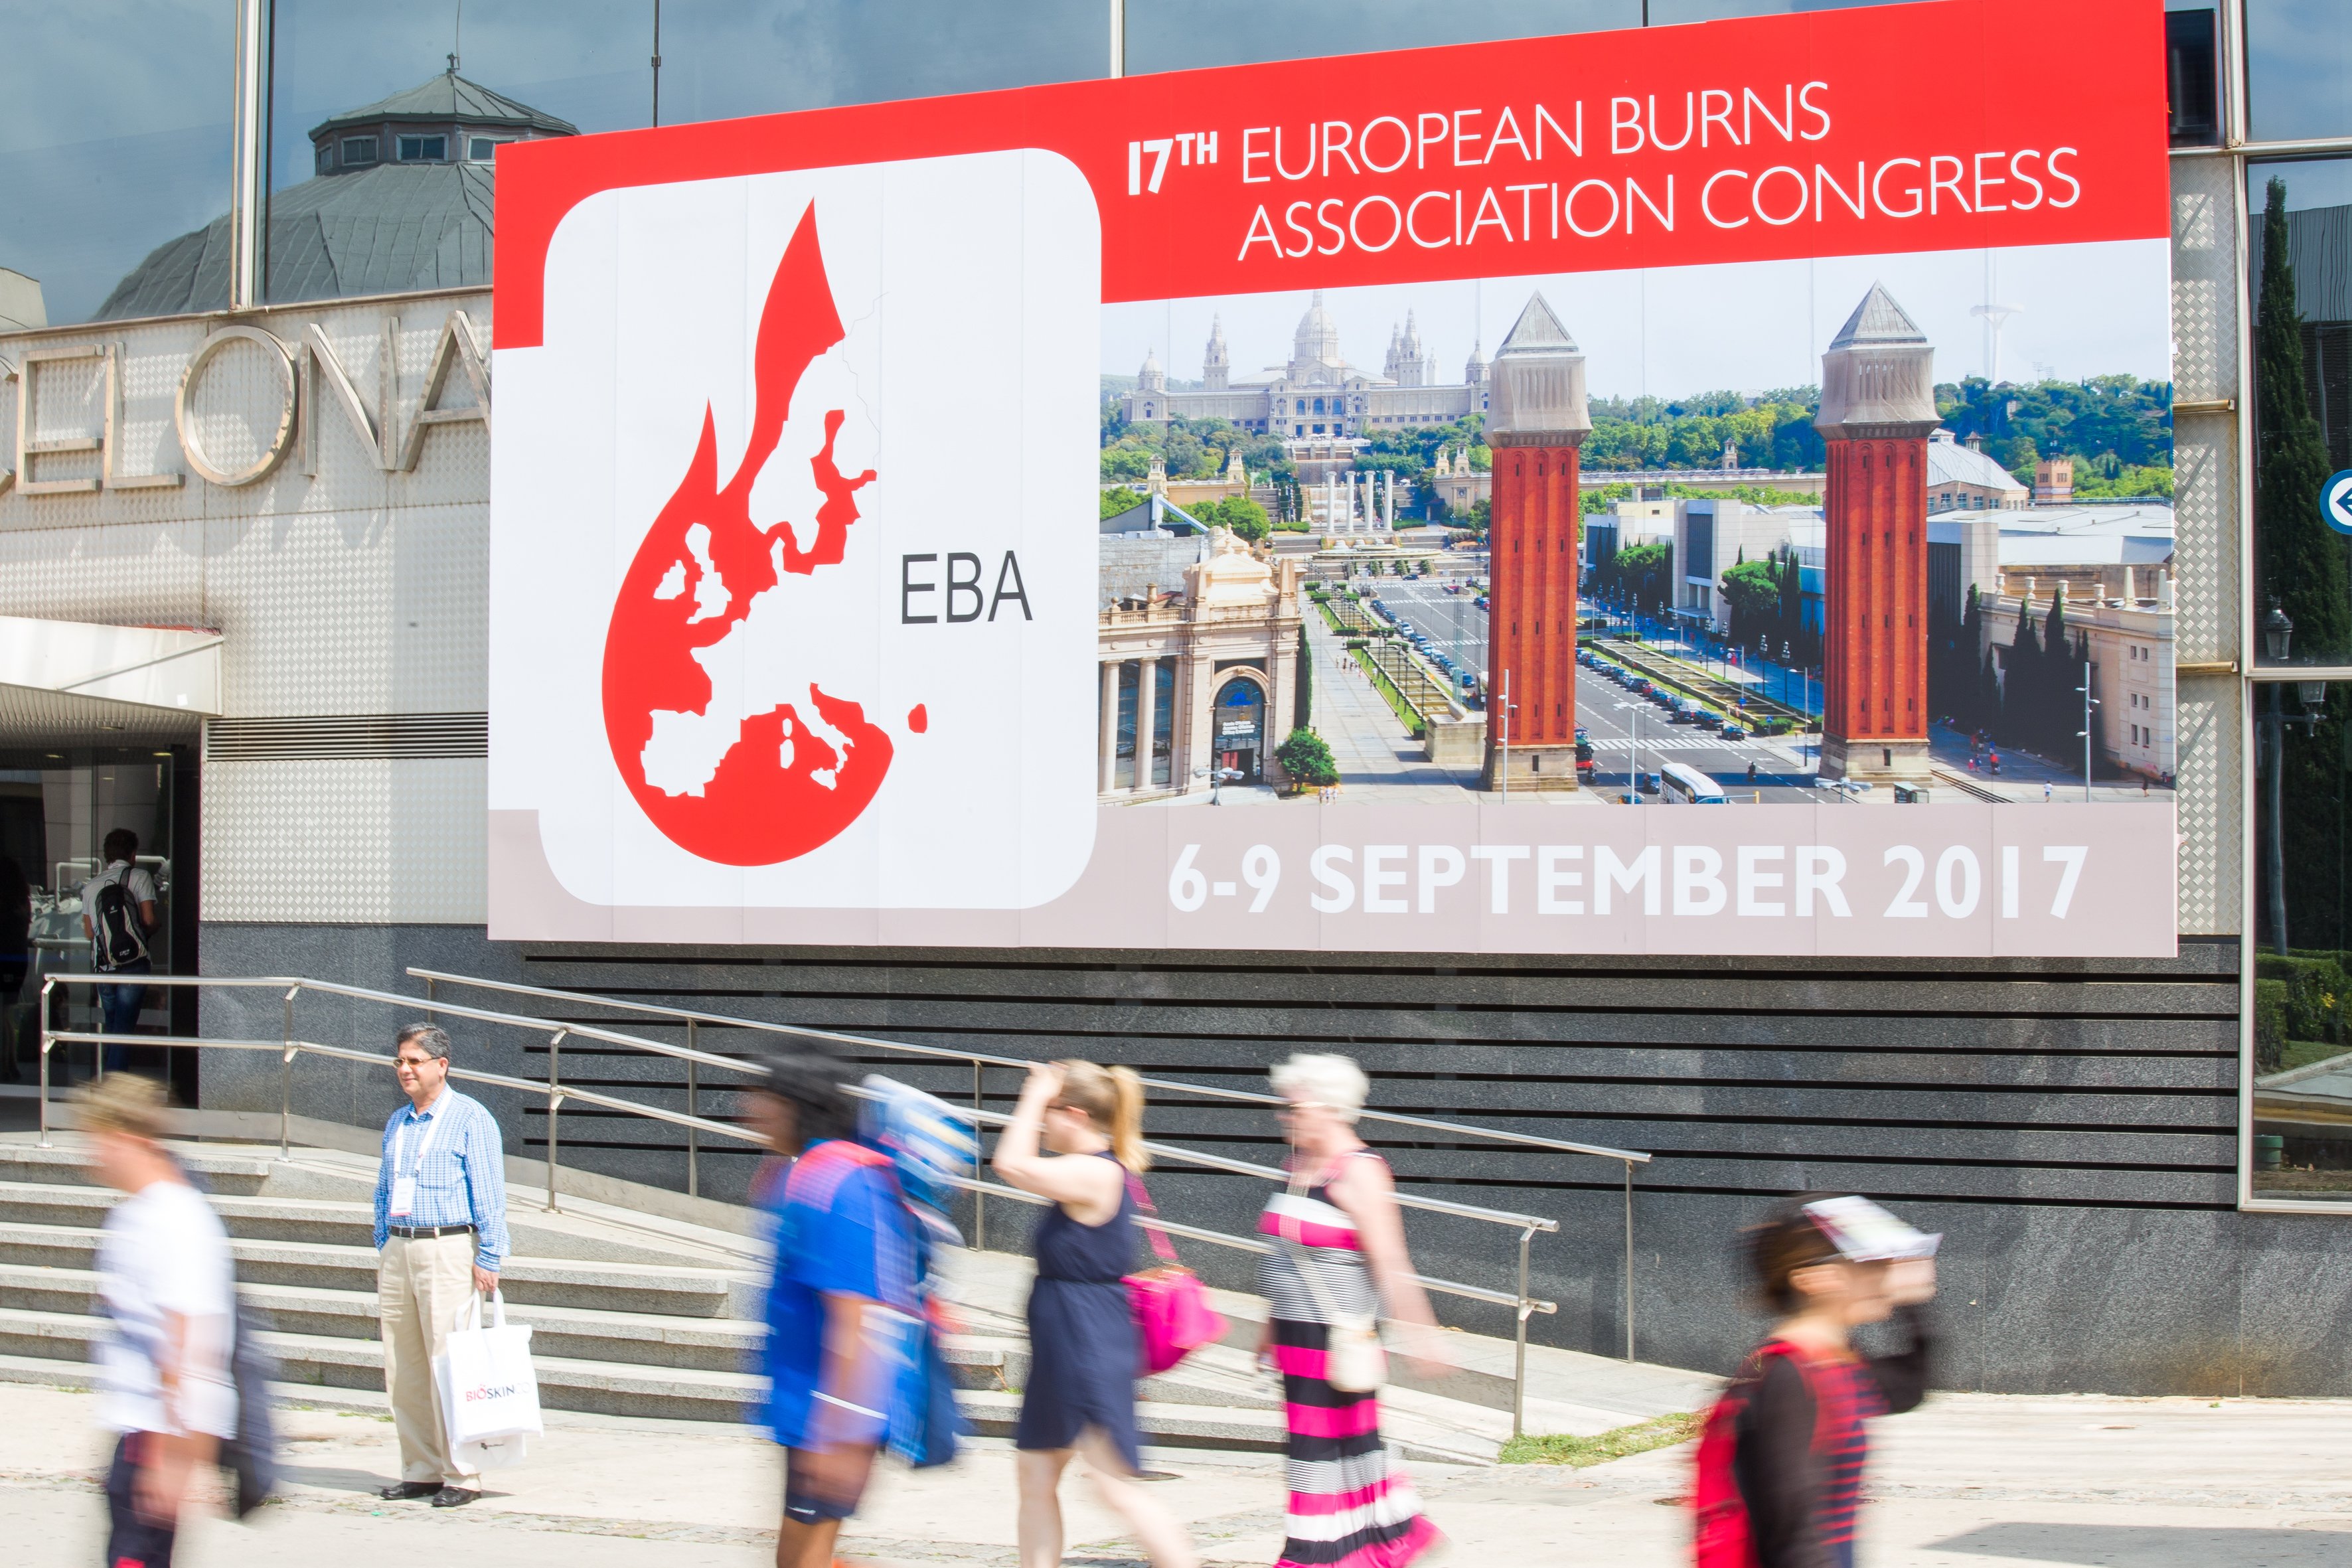 17th European Burns Association Congress, 6-9 September, Barcelona